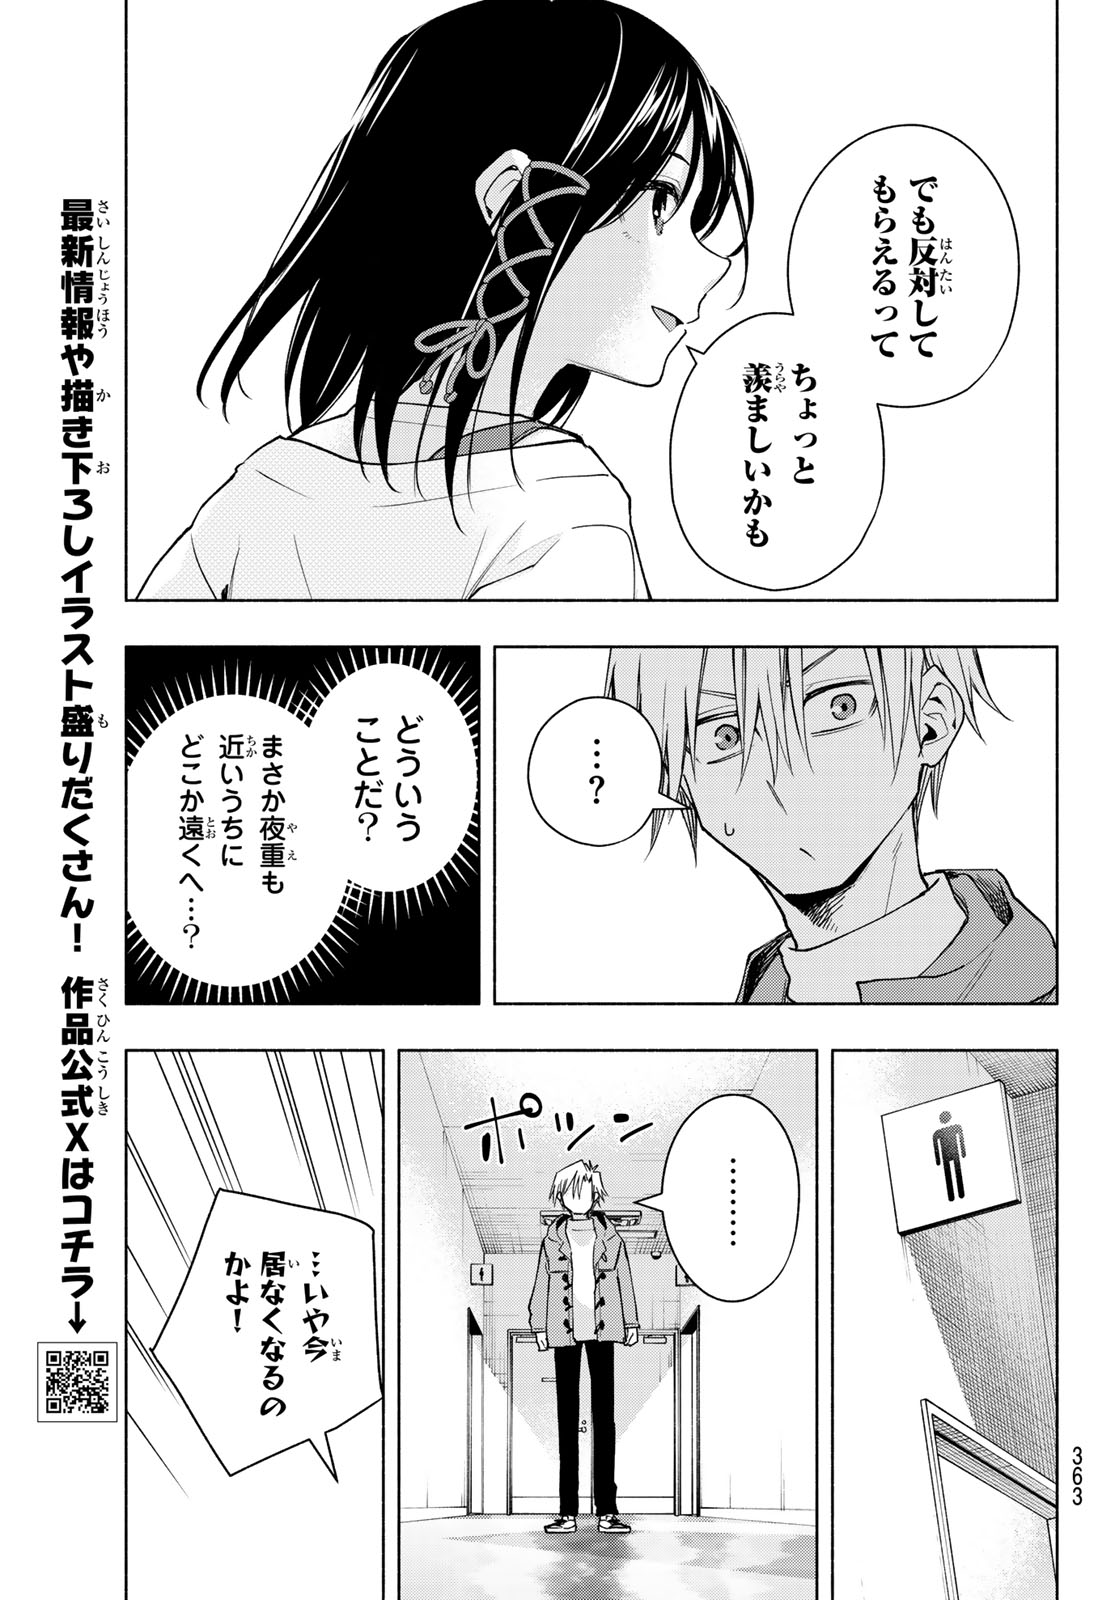 Amagami-san Chi no Enmusubi - Chapter 139 - Page 5